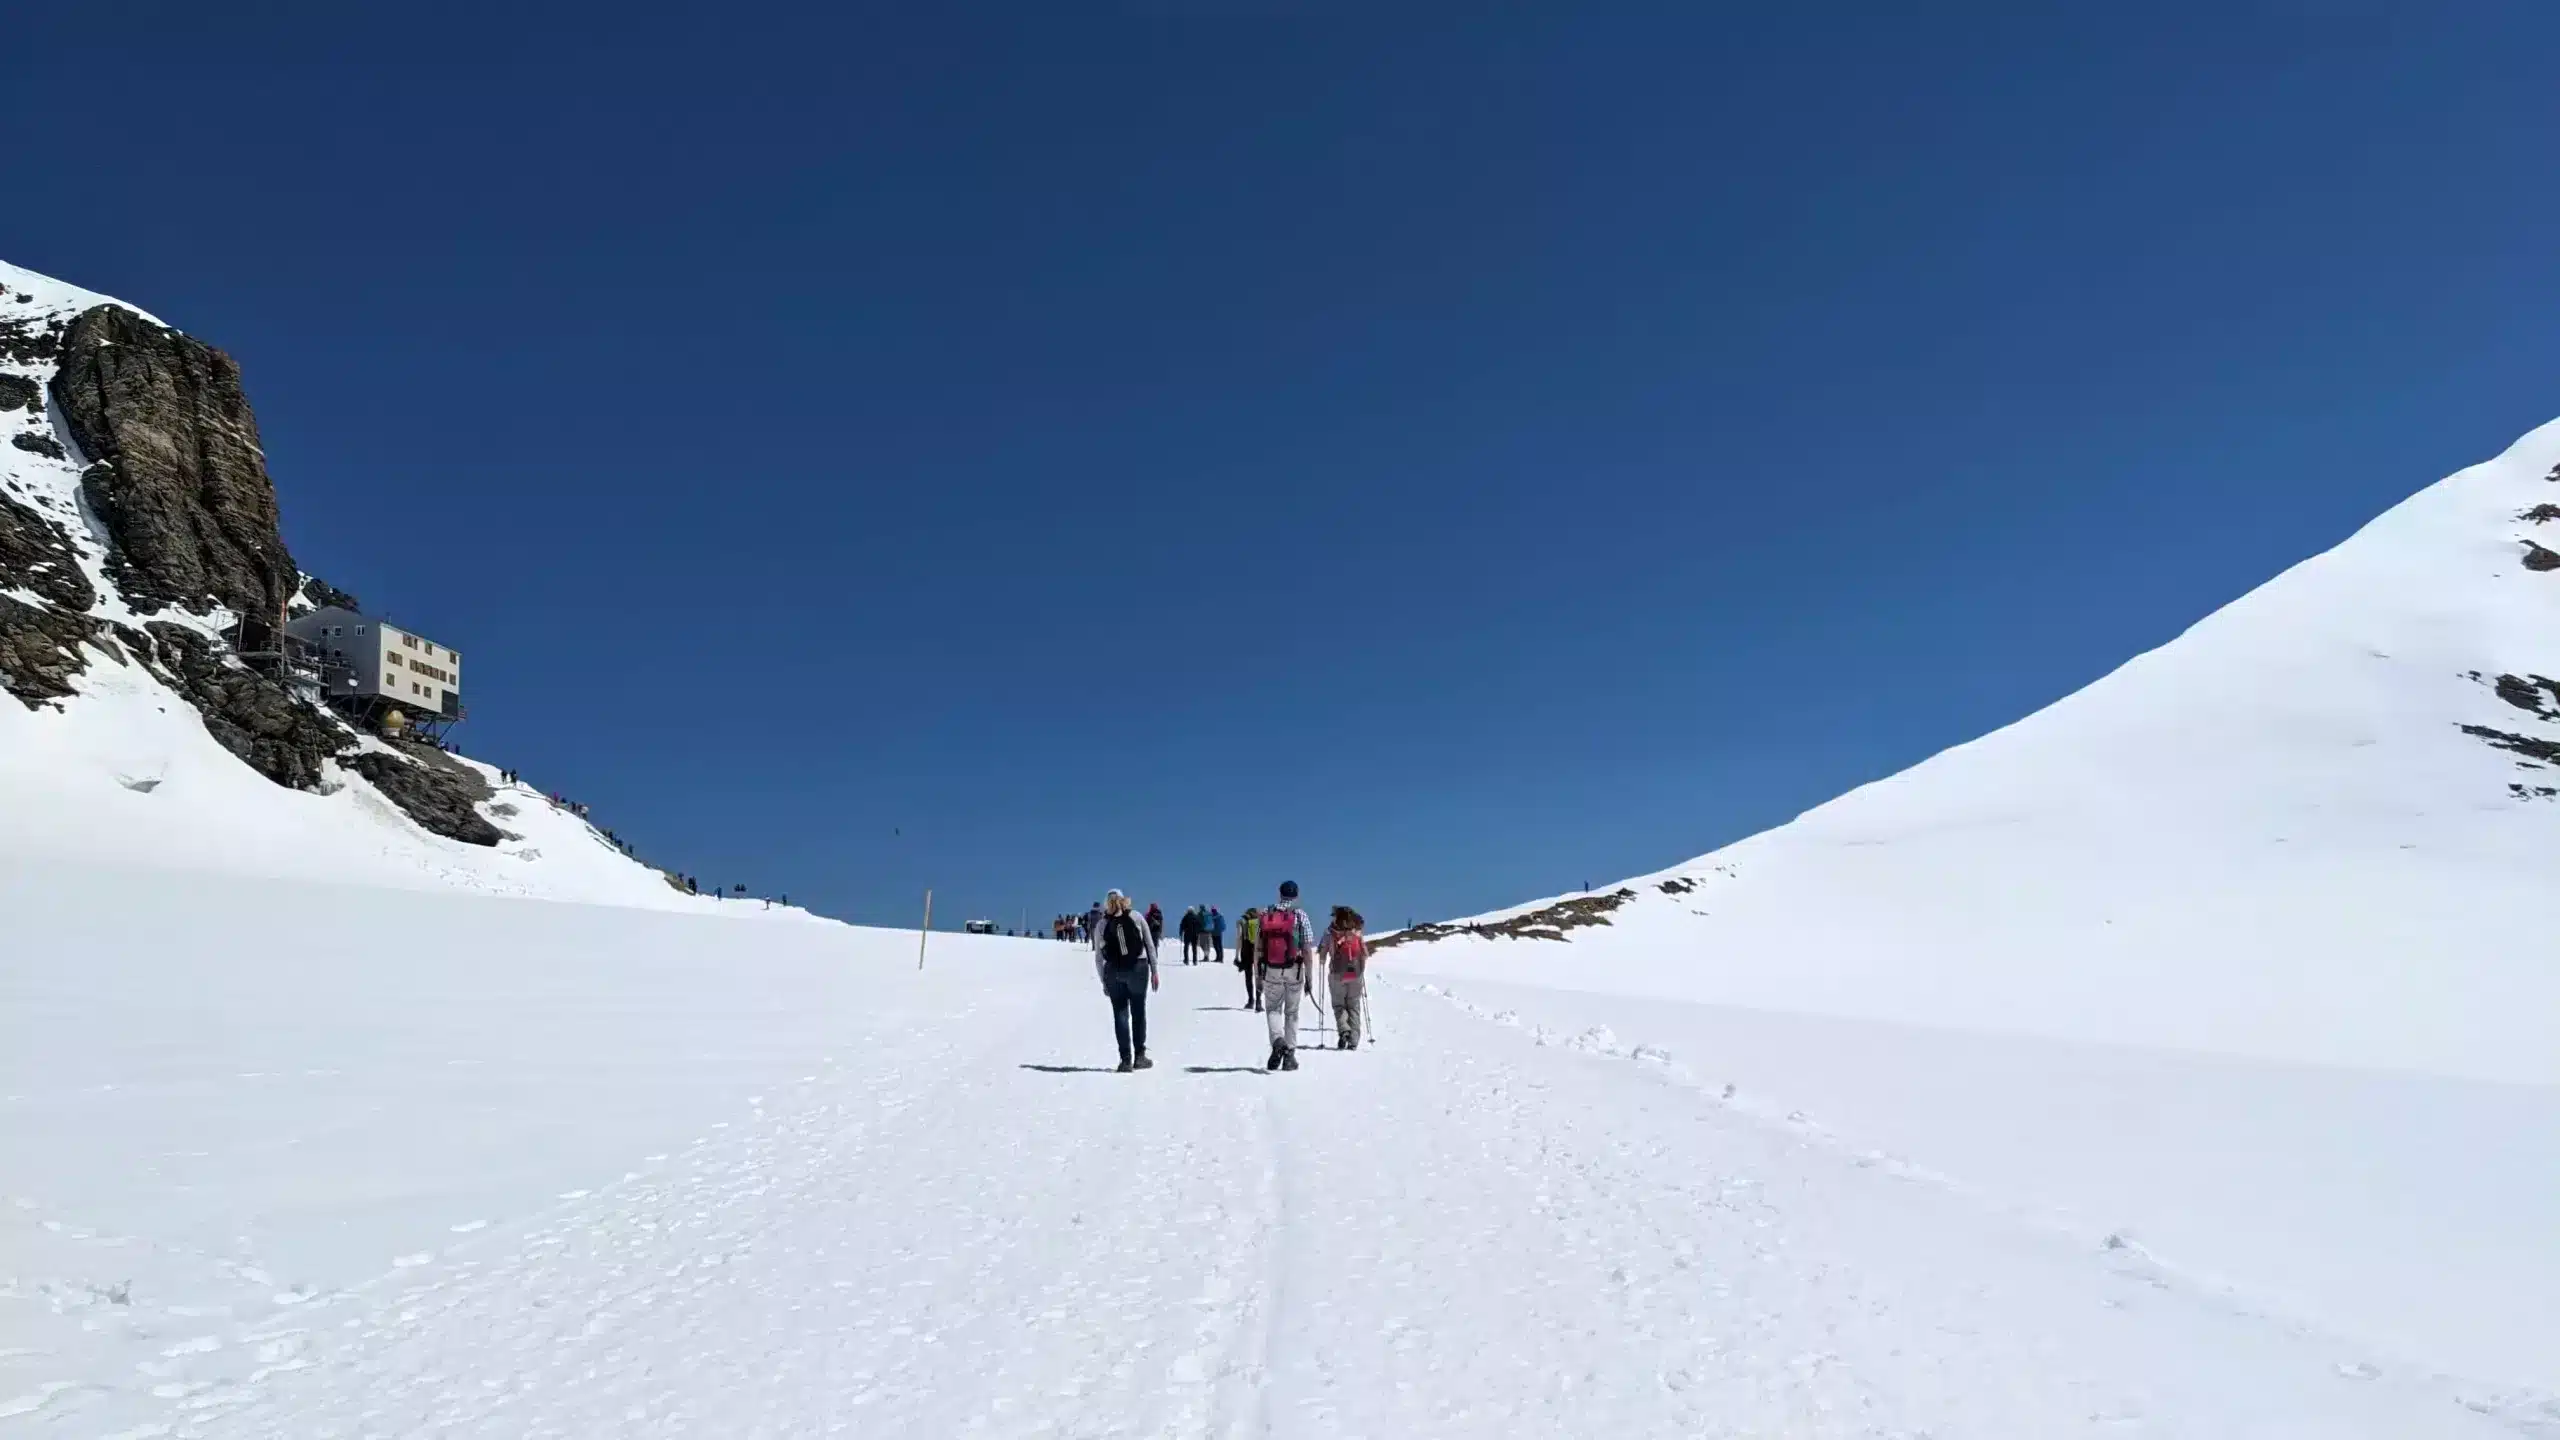 Chemin de randonnée sur un champ de neige du Jungfraujoch à la Mönchsjochhütte. Sur la gauche, on peut voir la Mönchsjochhütte.